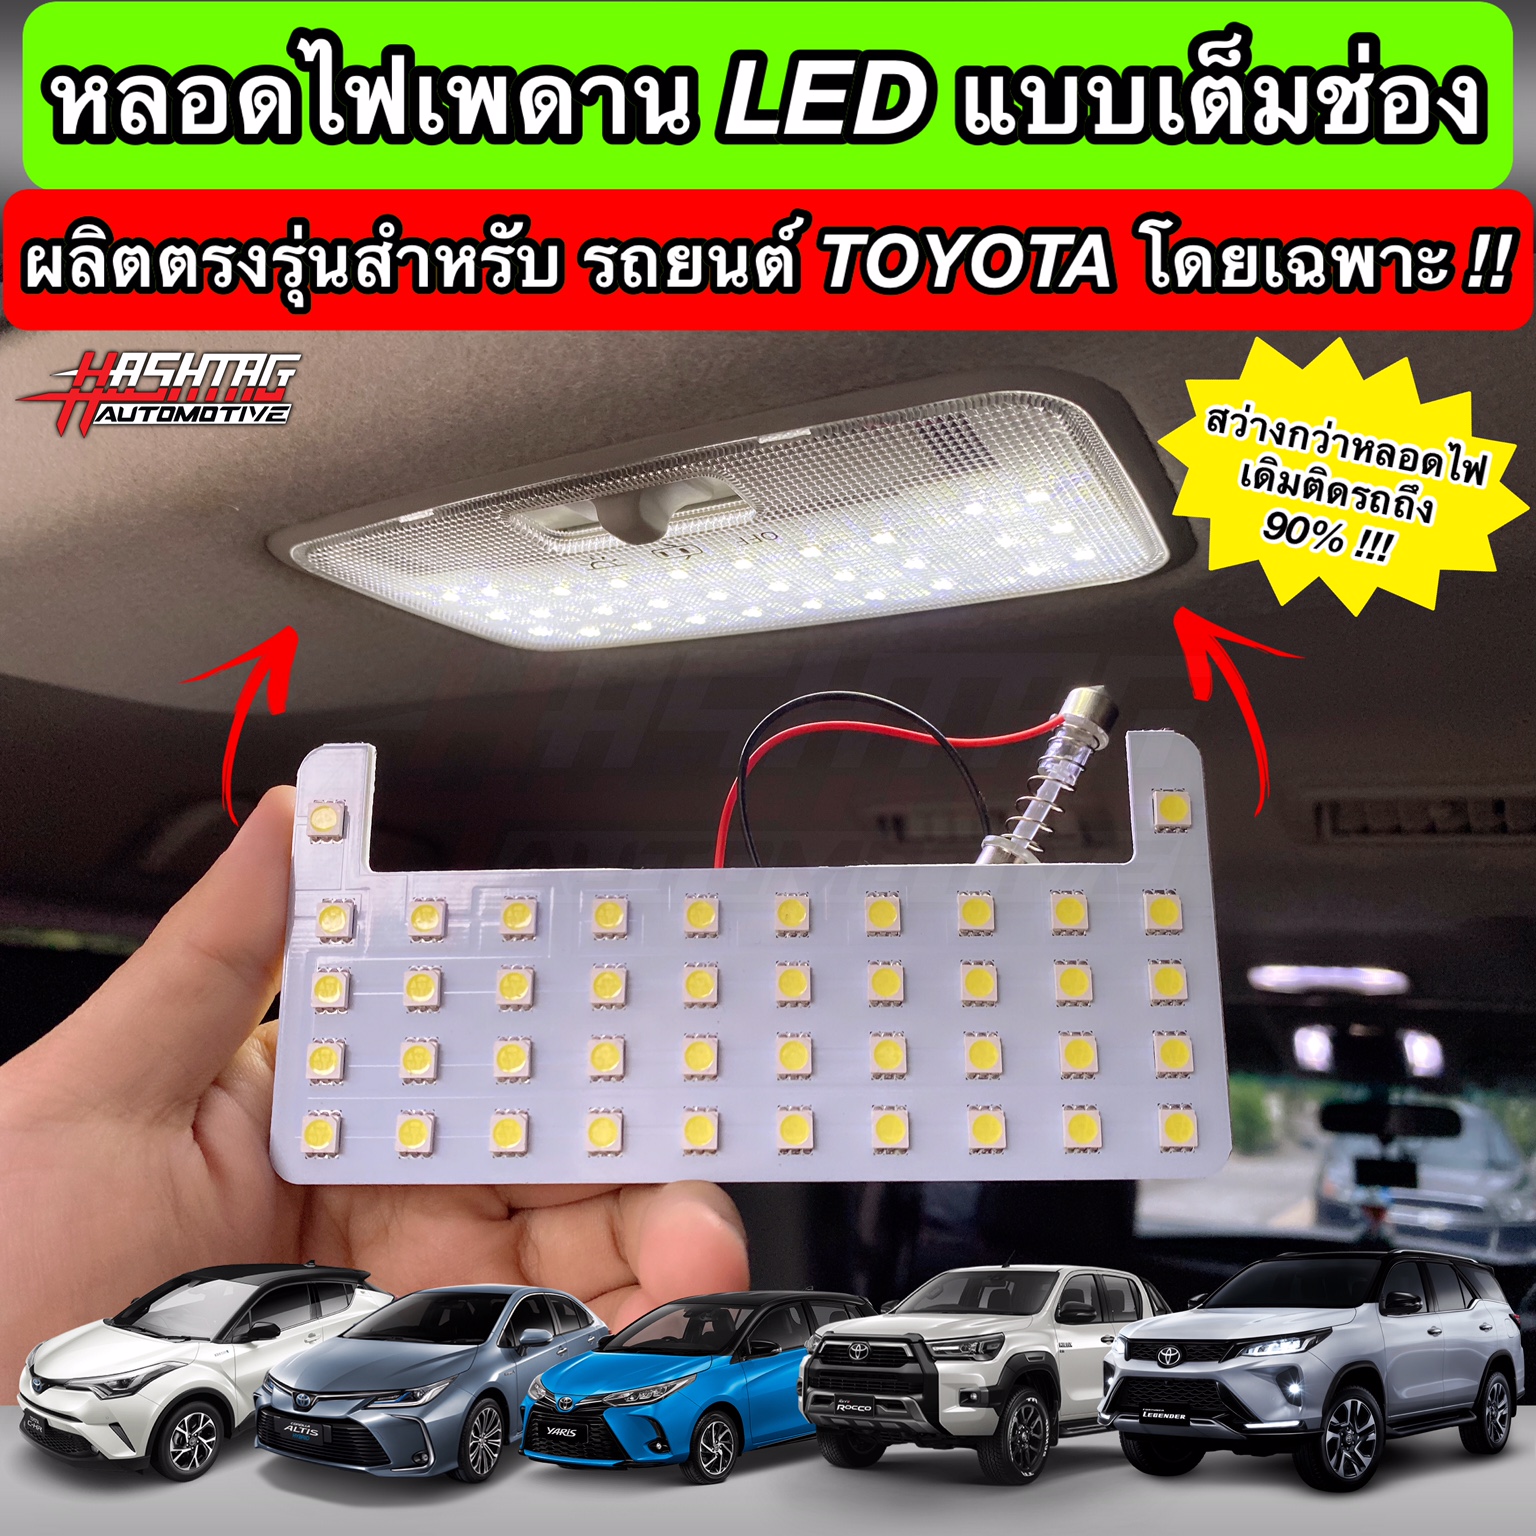 [สว่างกว่าเดิมถึง 90% !!] หลอดไฟเพดาน LED เต็มช่องสำหรับรถโตโยต้า ผลิตตรงรุ่น New Fotuner, Hilux Revo, Yaris, Yaris Ativ, Altis, C-HR, Sienta, Innova Crysta ฯลฯ (LED Ceiling Lamp For Toyota)